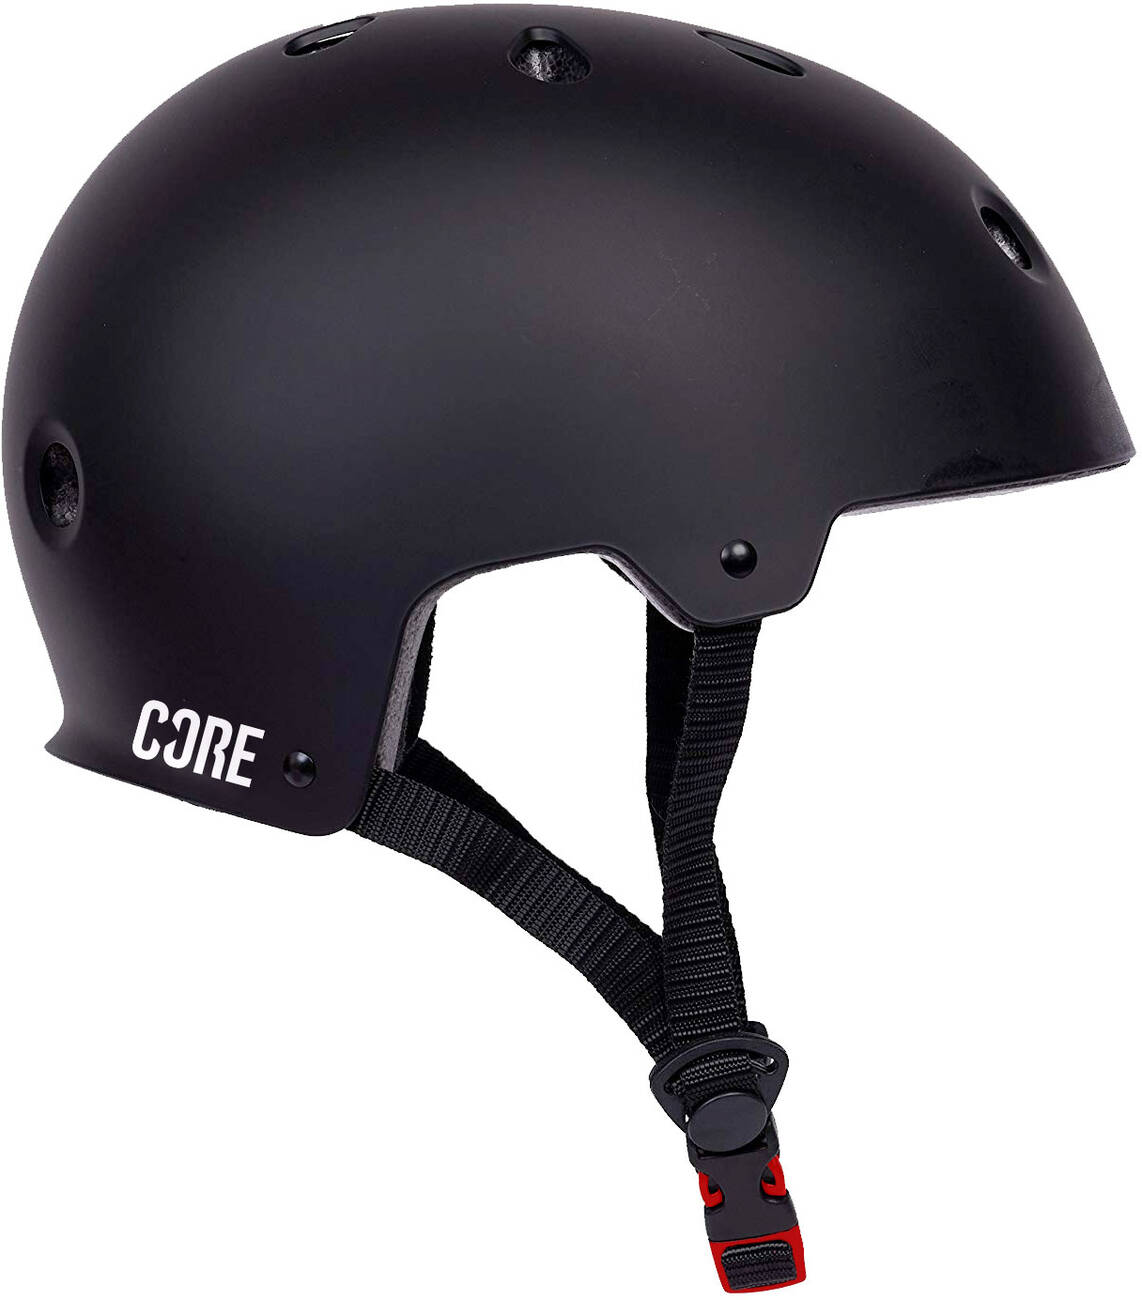 CORE Action Sports Helm Skate und Fahrradhelm schwarz